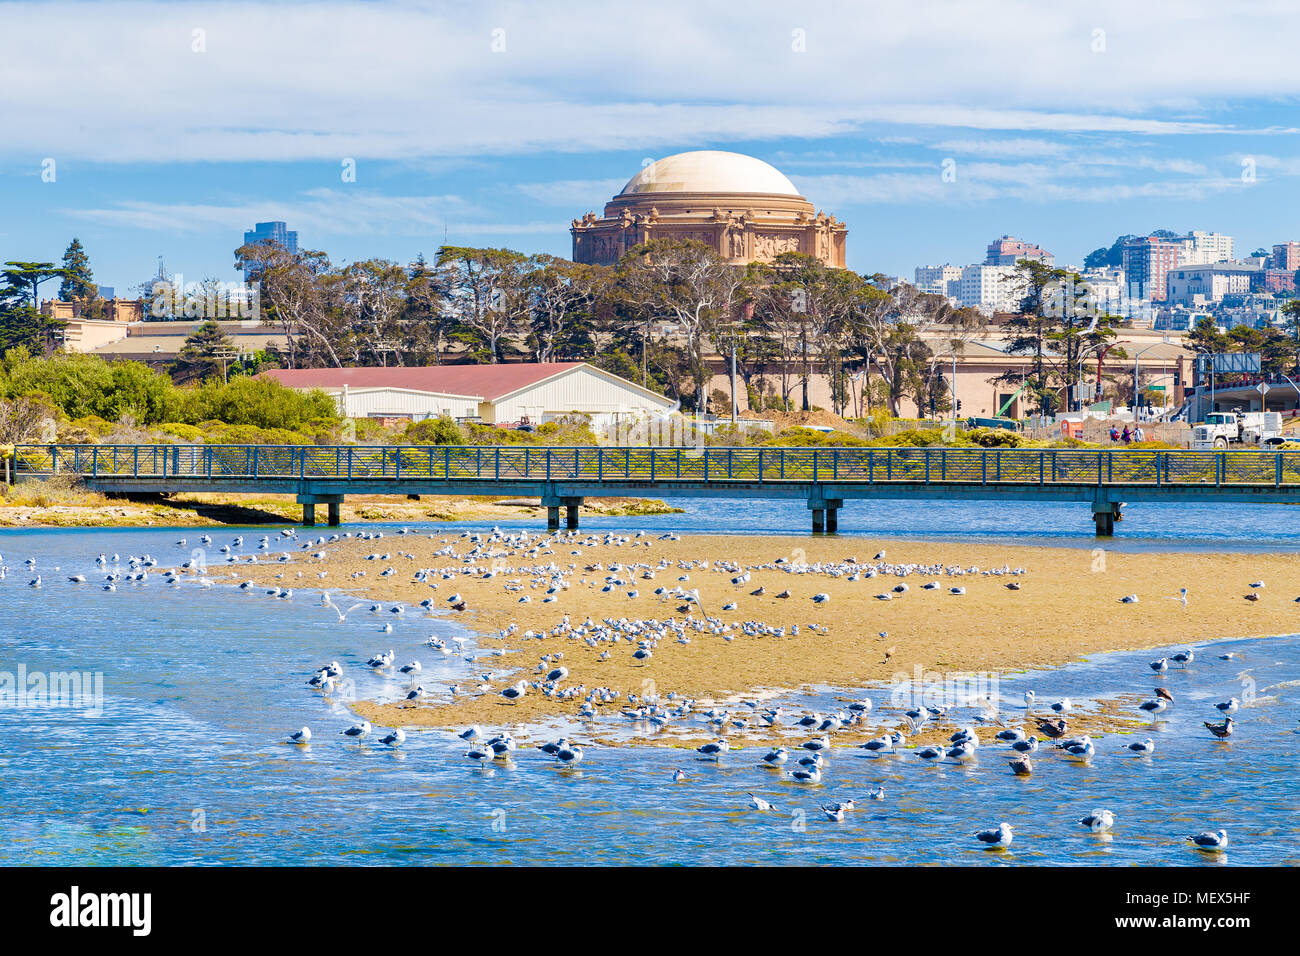 Hermosa vista del famoso Palacio de Bellas Artes con aves sobre un banco de arena en un día soleado con el cielo azul y las nubes en verano, San Francisco, California Foto de stock